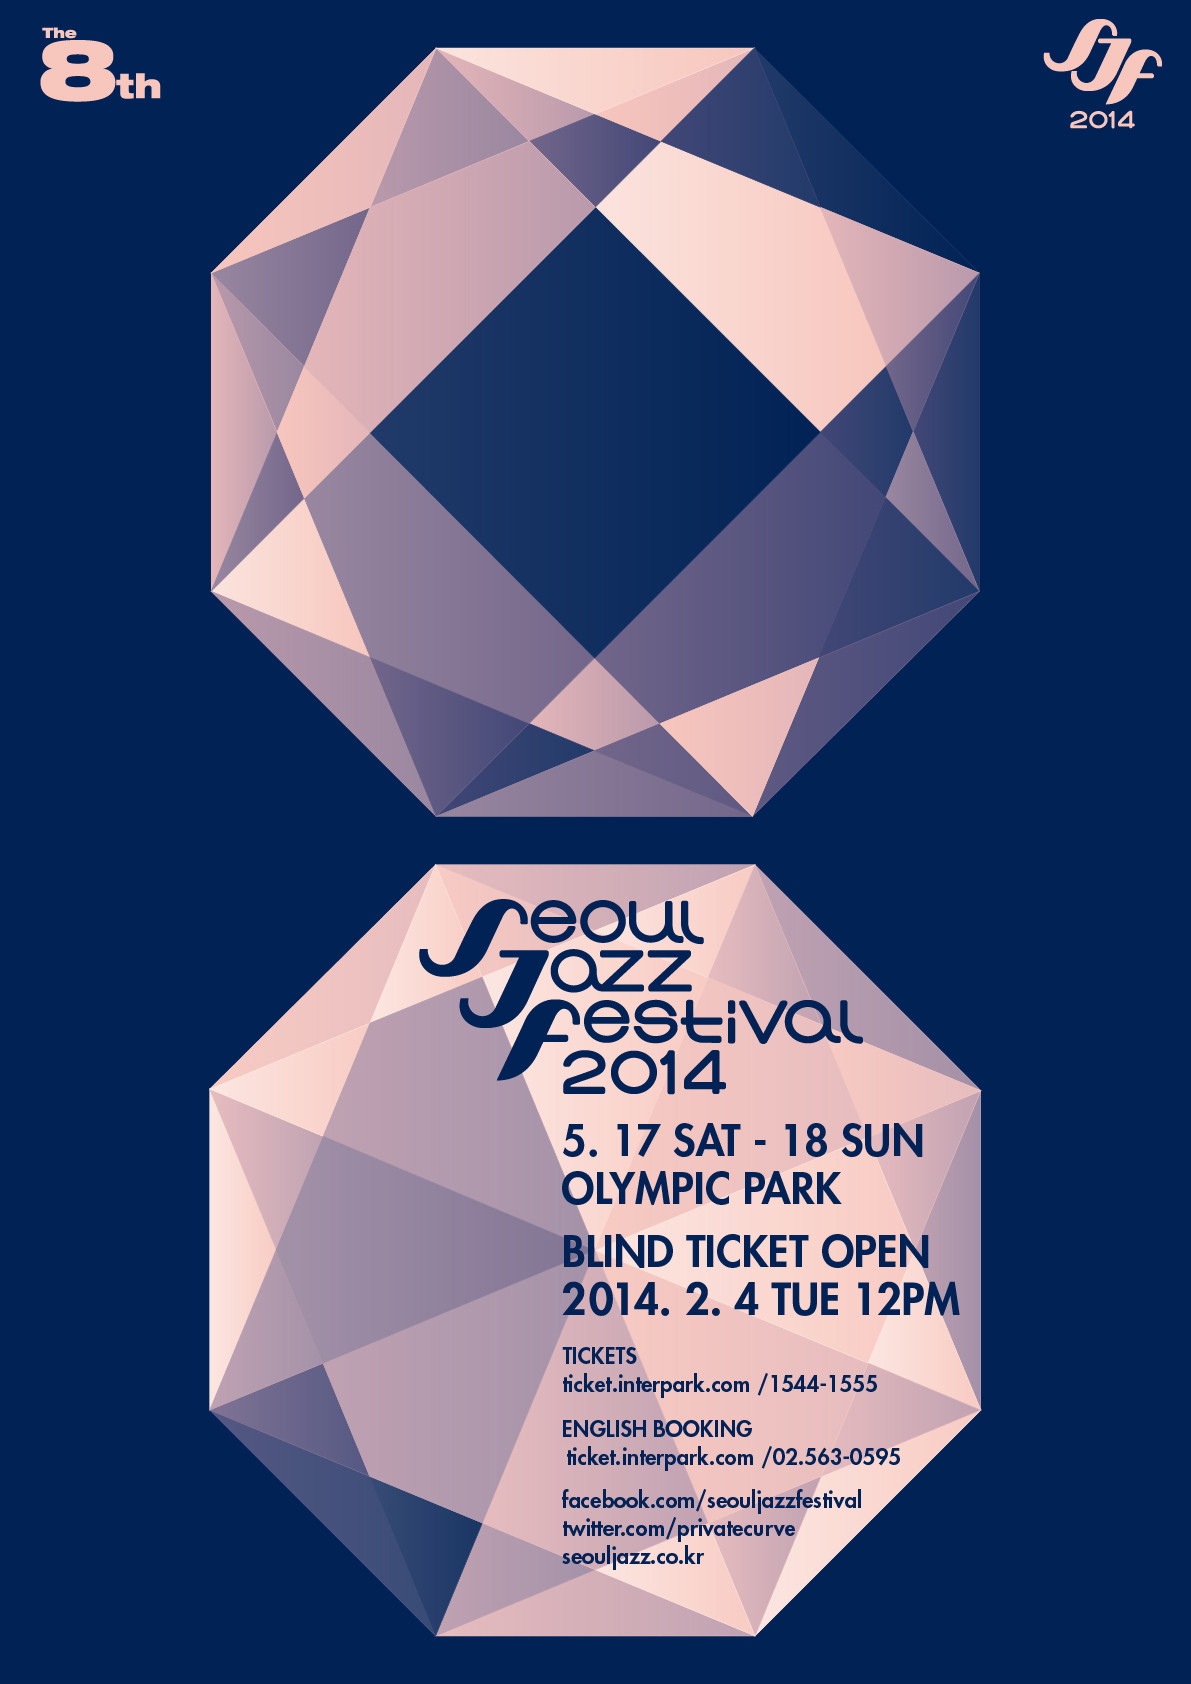 [예매공지]서울재즈페스티벌 2014 블라인드 티켓 오픈 안내